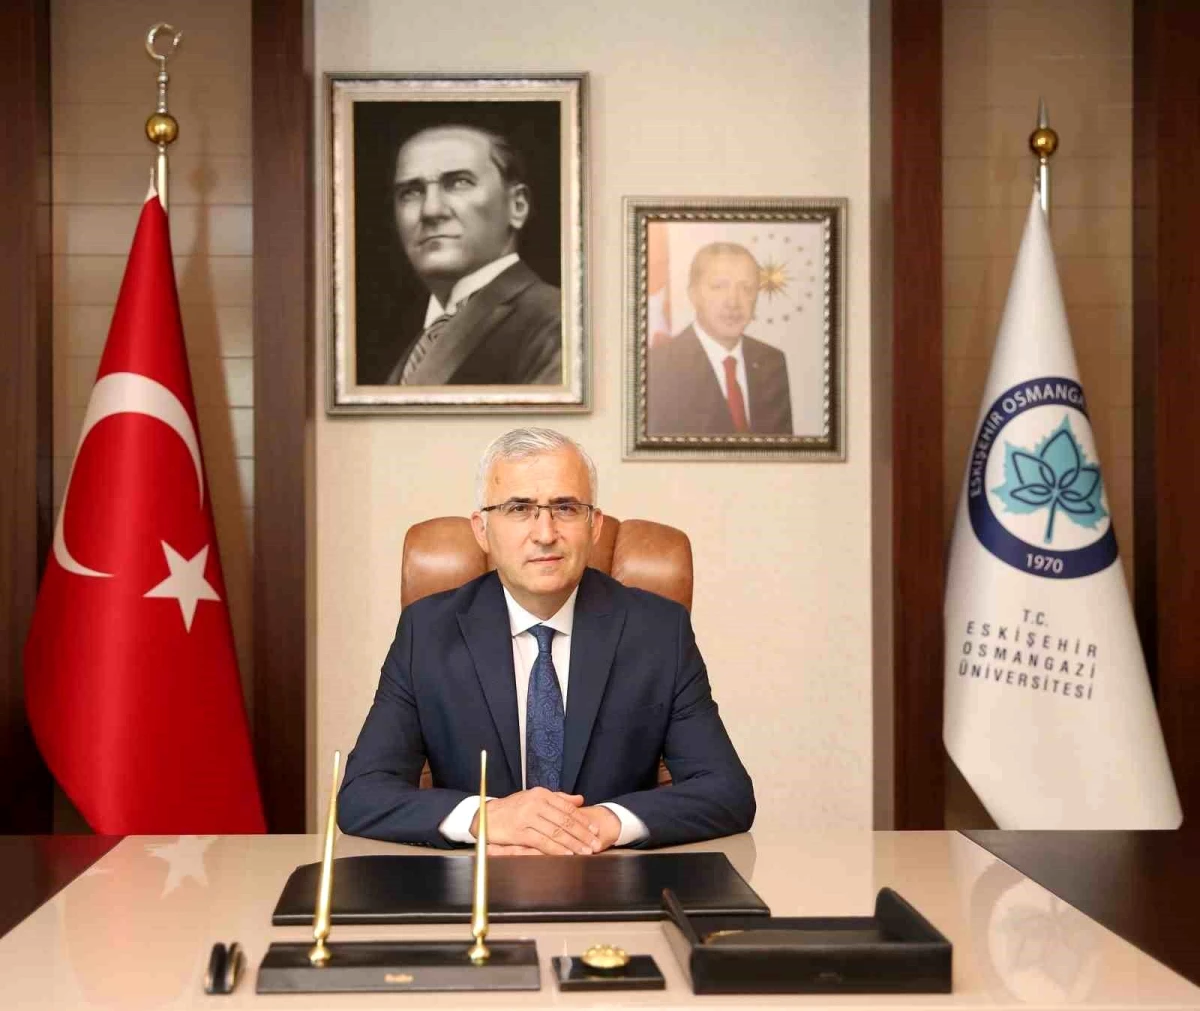 Eskişehir Osmangazi Üniversitesi Rektörü Prof. Dr. Kamil Çolak, 18 Mart Çanakkale Zaferi ile ilgili bir mesaj yayımladı